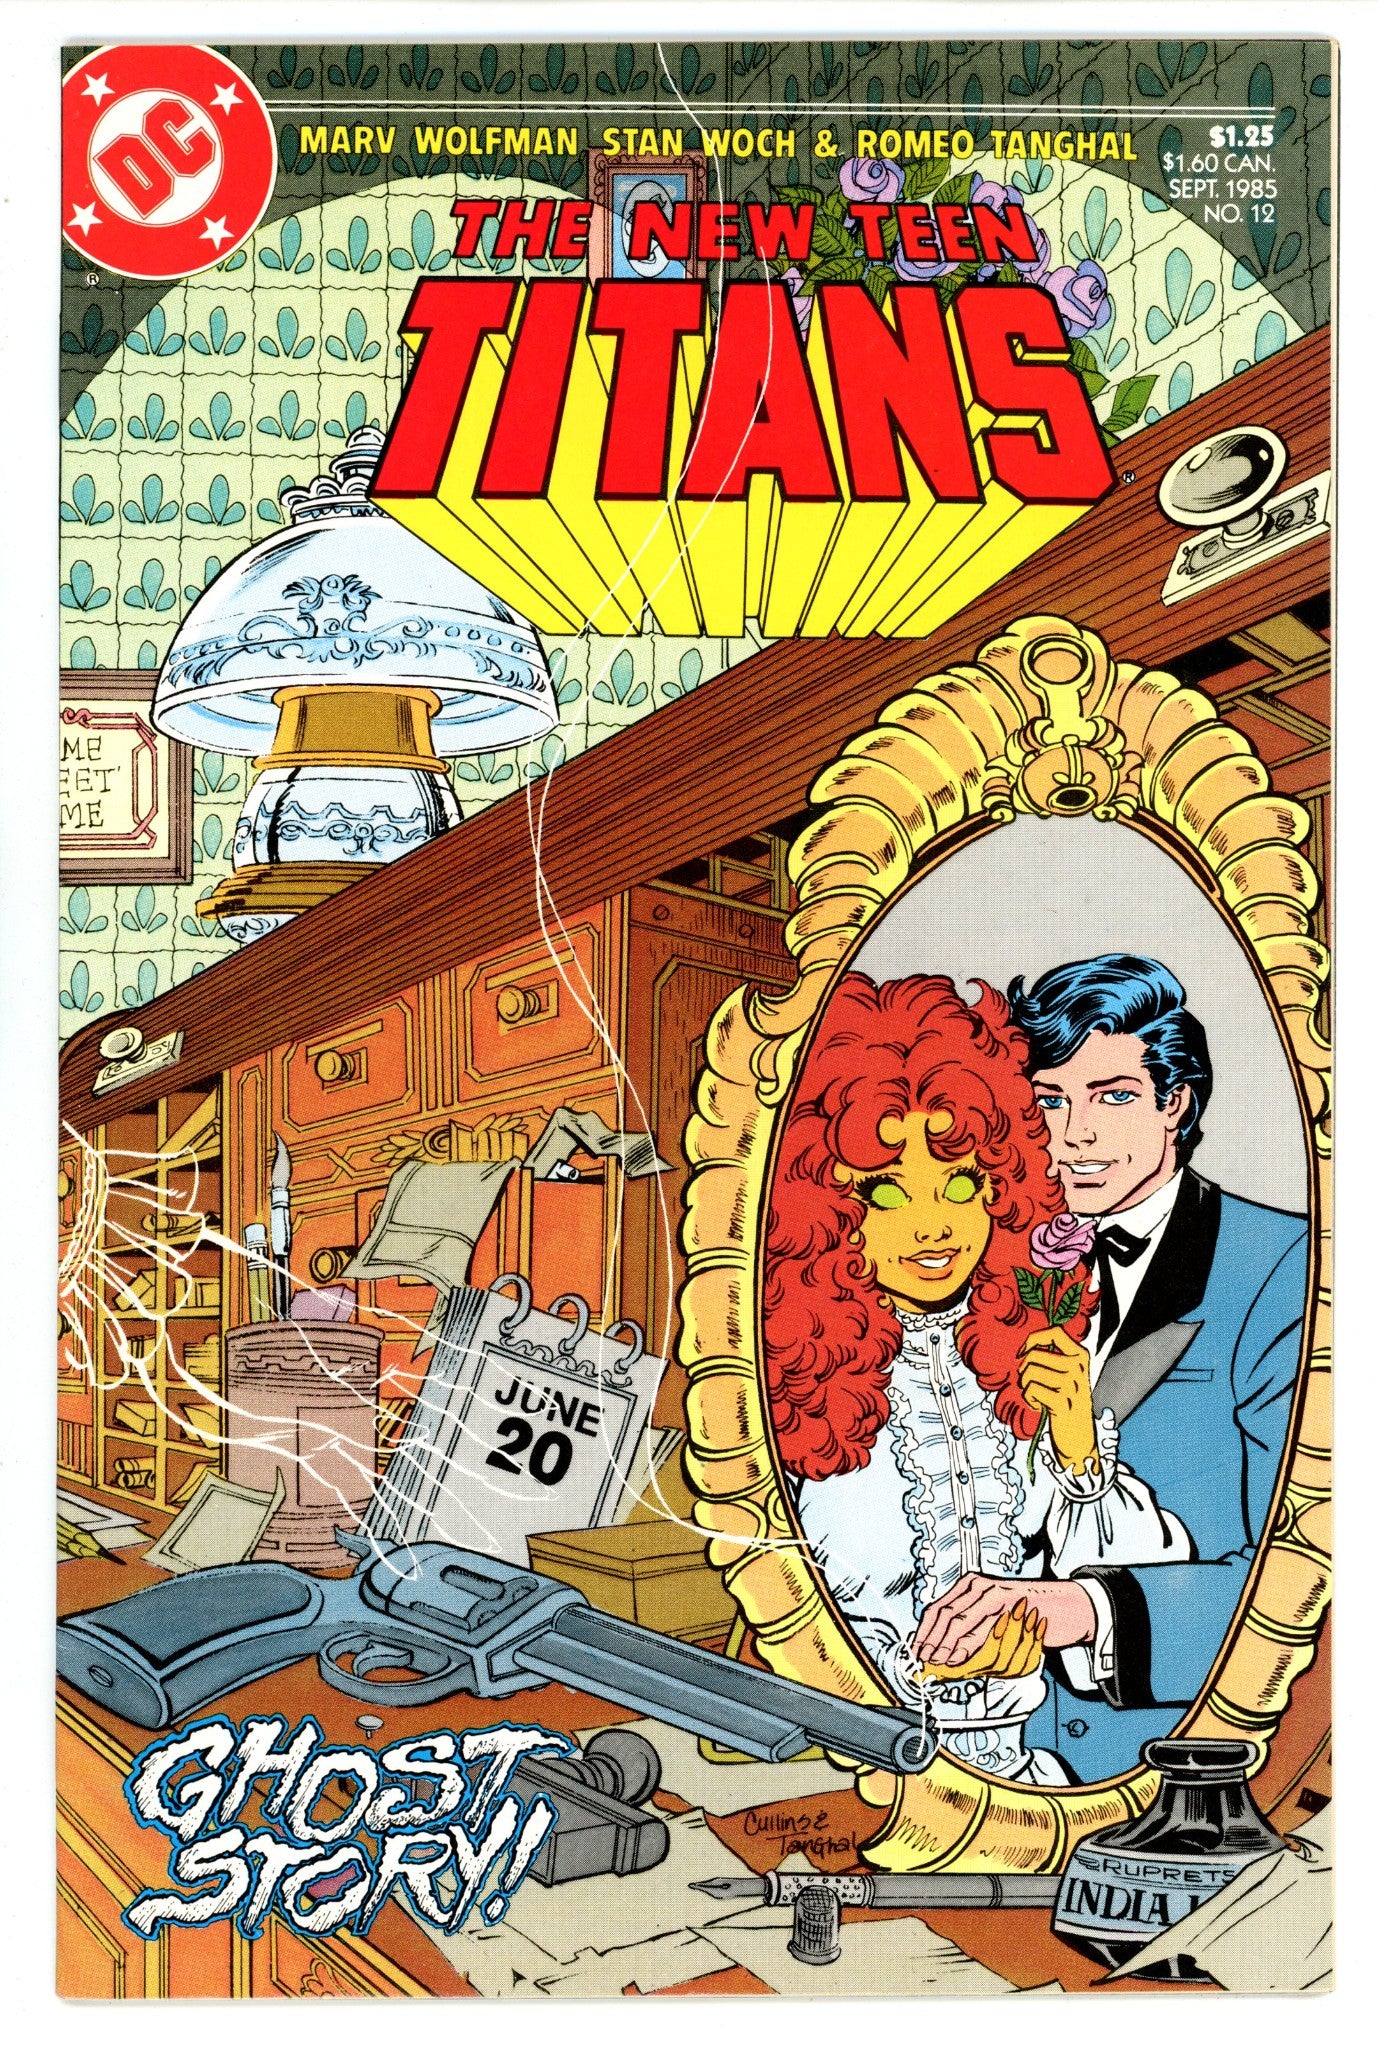 The New Teen Titans Vol 2 12 High Grade (1985) 